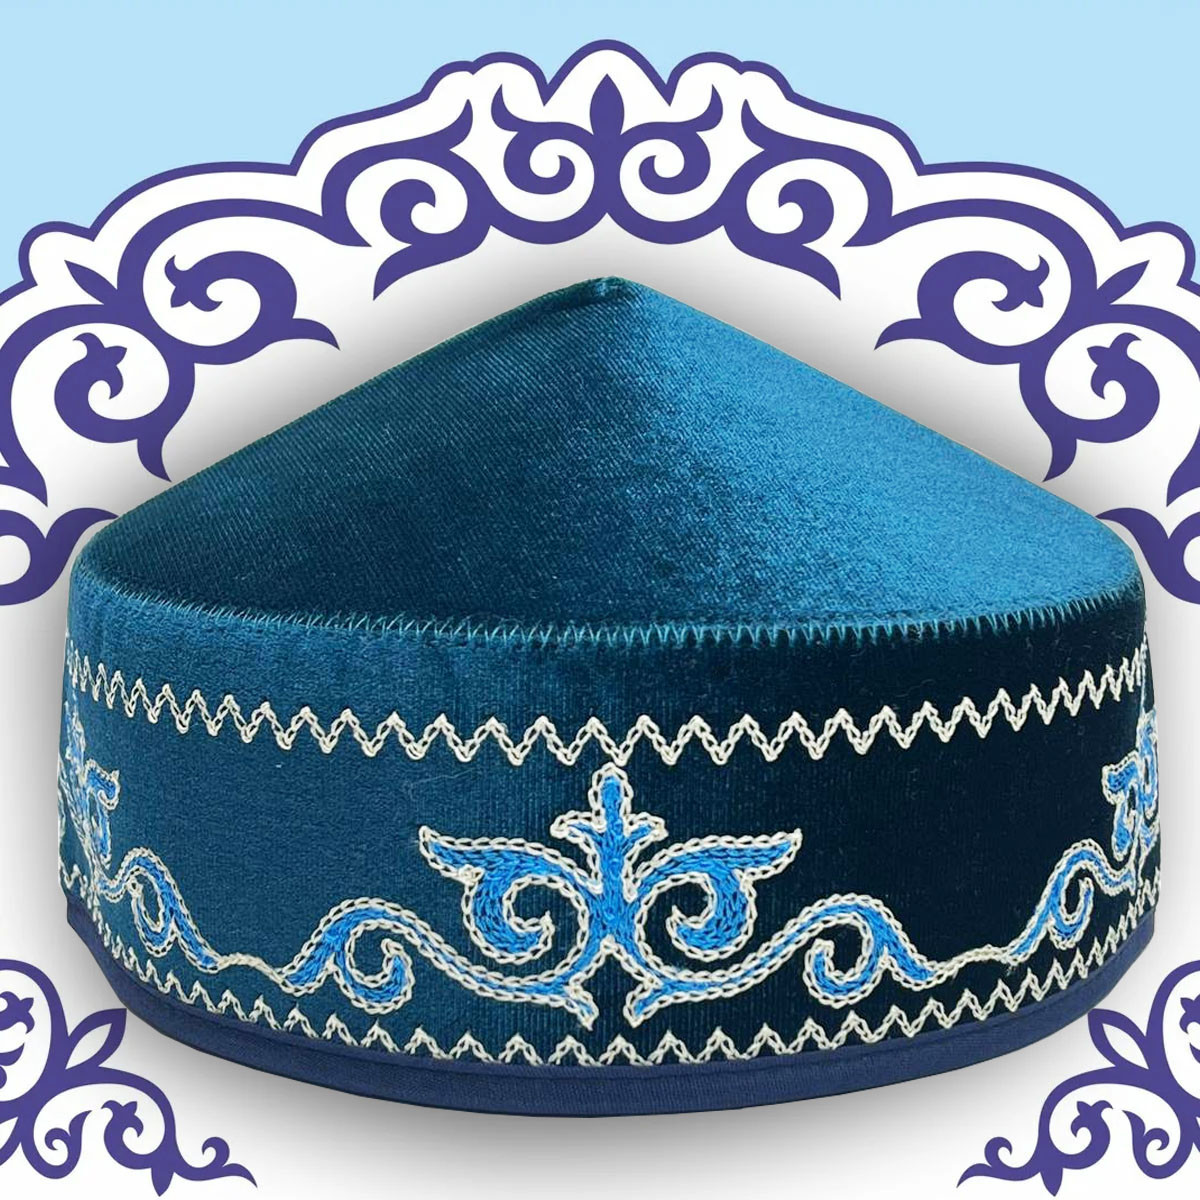 Казахская национальная тюбетейка (такия) голубая с голубым орнаментом и белой строчкой